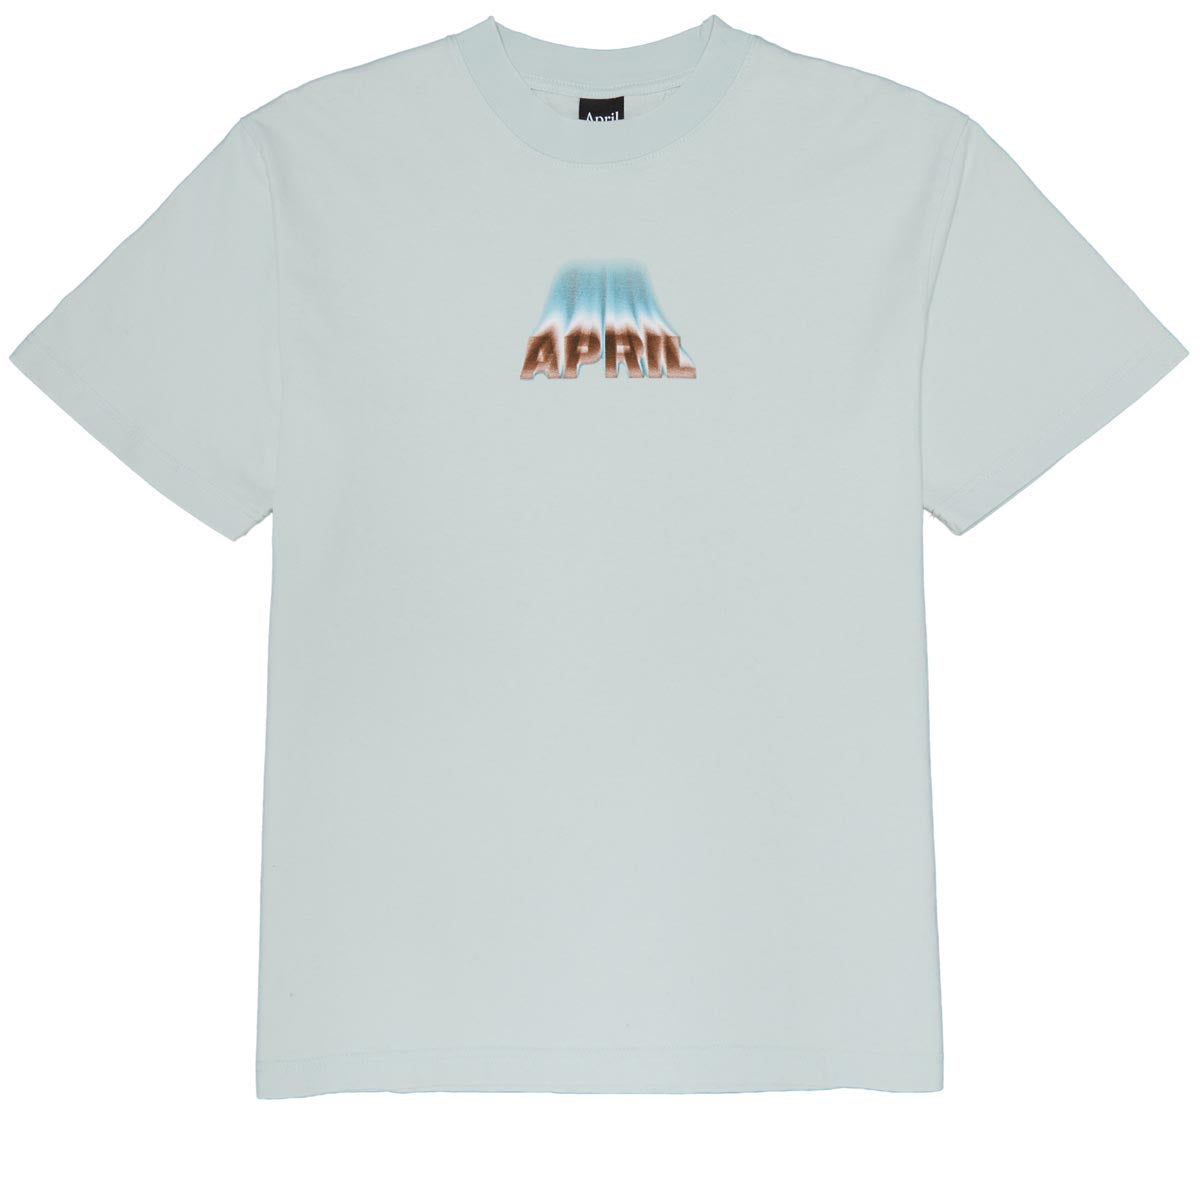 April Dust  T-Shirt - Seafoam image 1